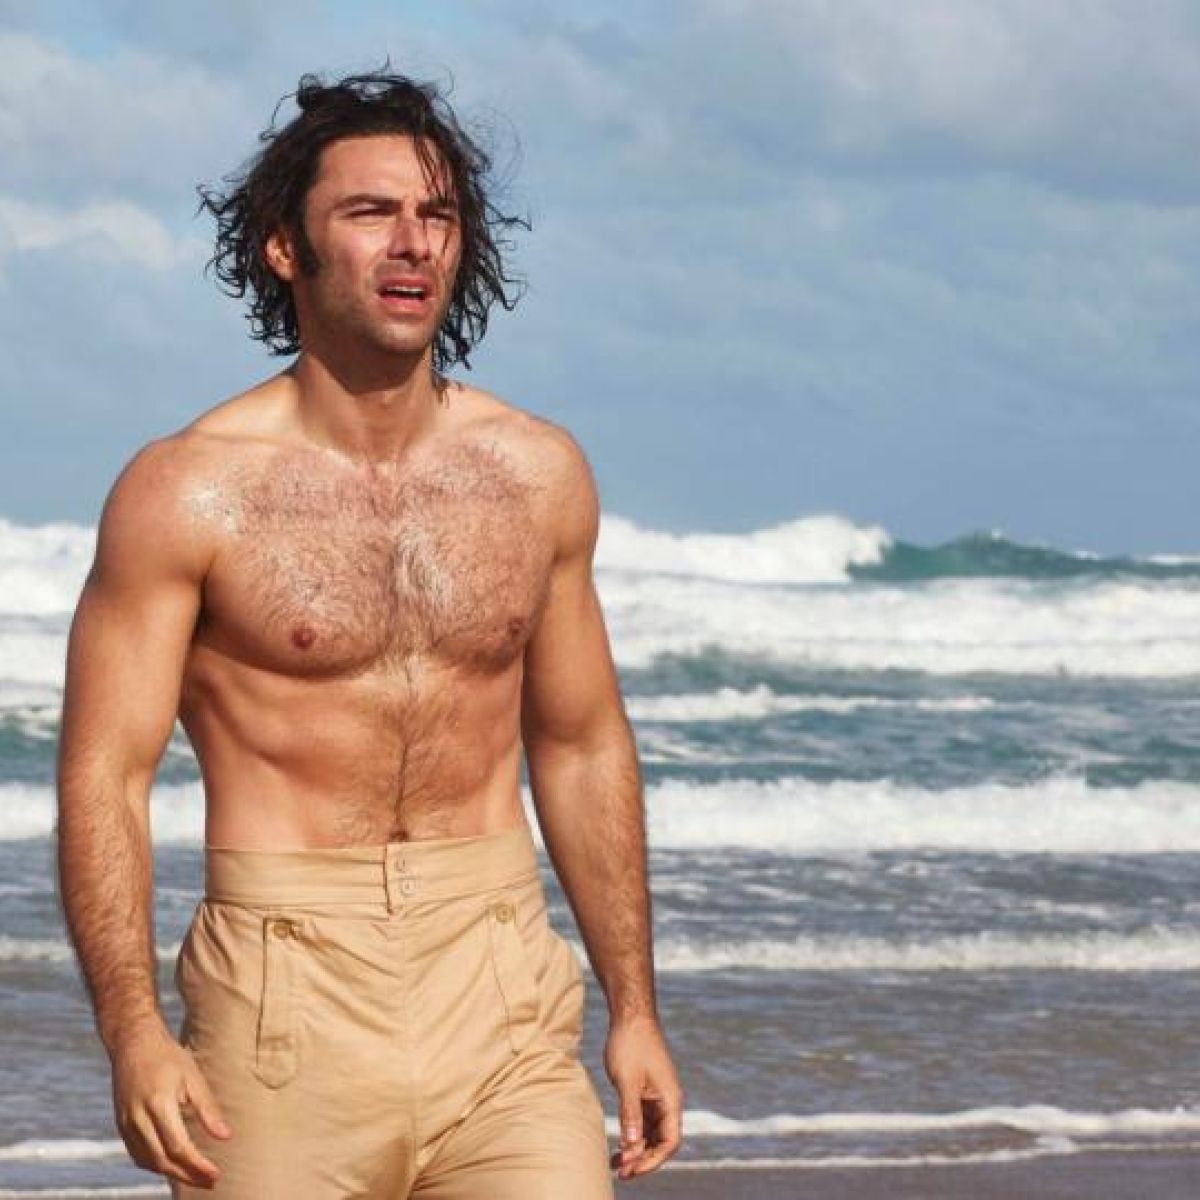 Der Christian
 Zwillinge ohne shirt, und mit atletische Körper am Strand
